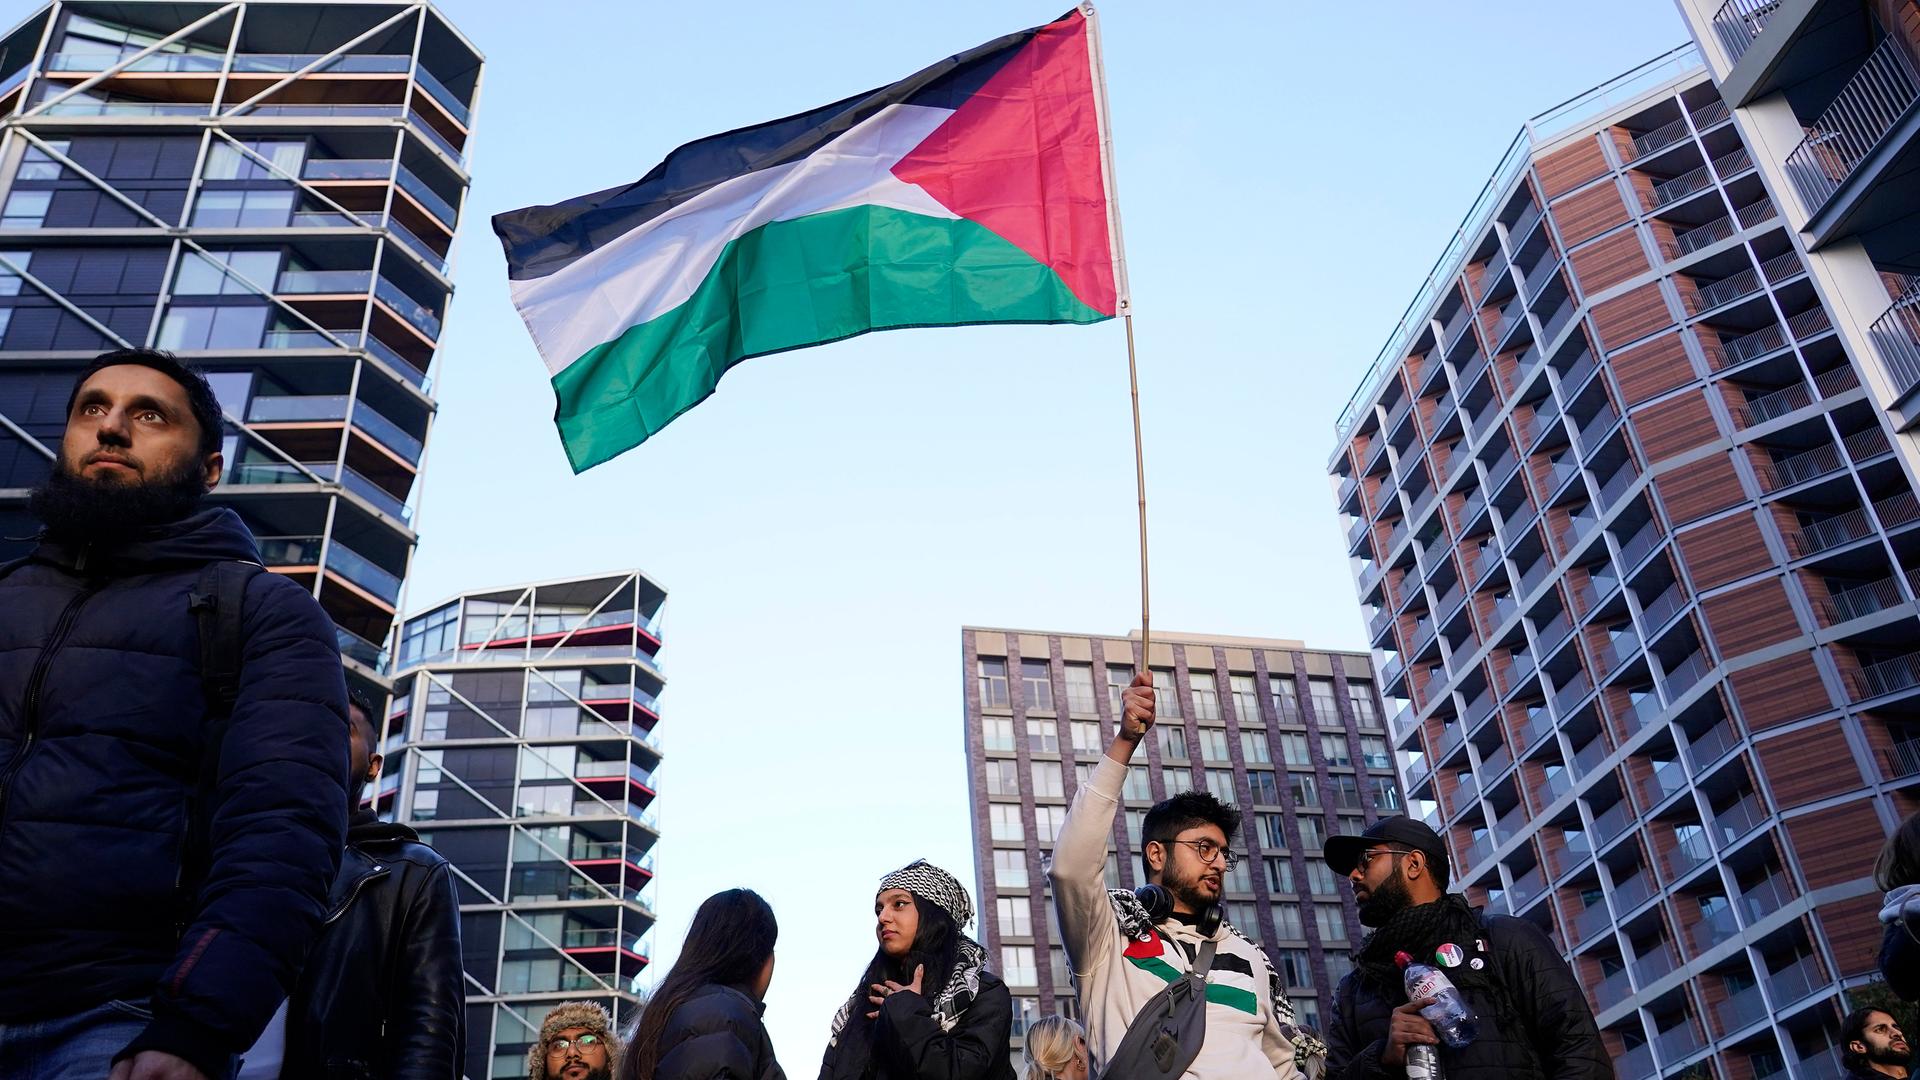 Vor Hochhäusern stehen mehrere Frauen und Männer. Ein Mann hält eine palästinensische Flagge hoch.